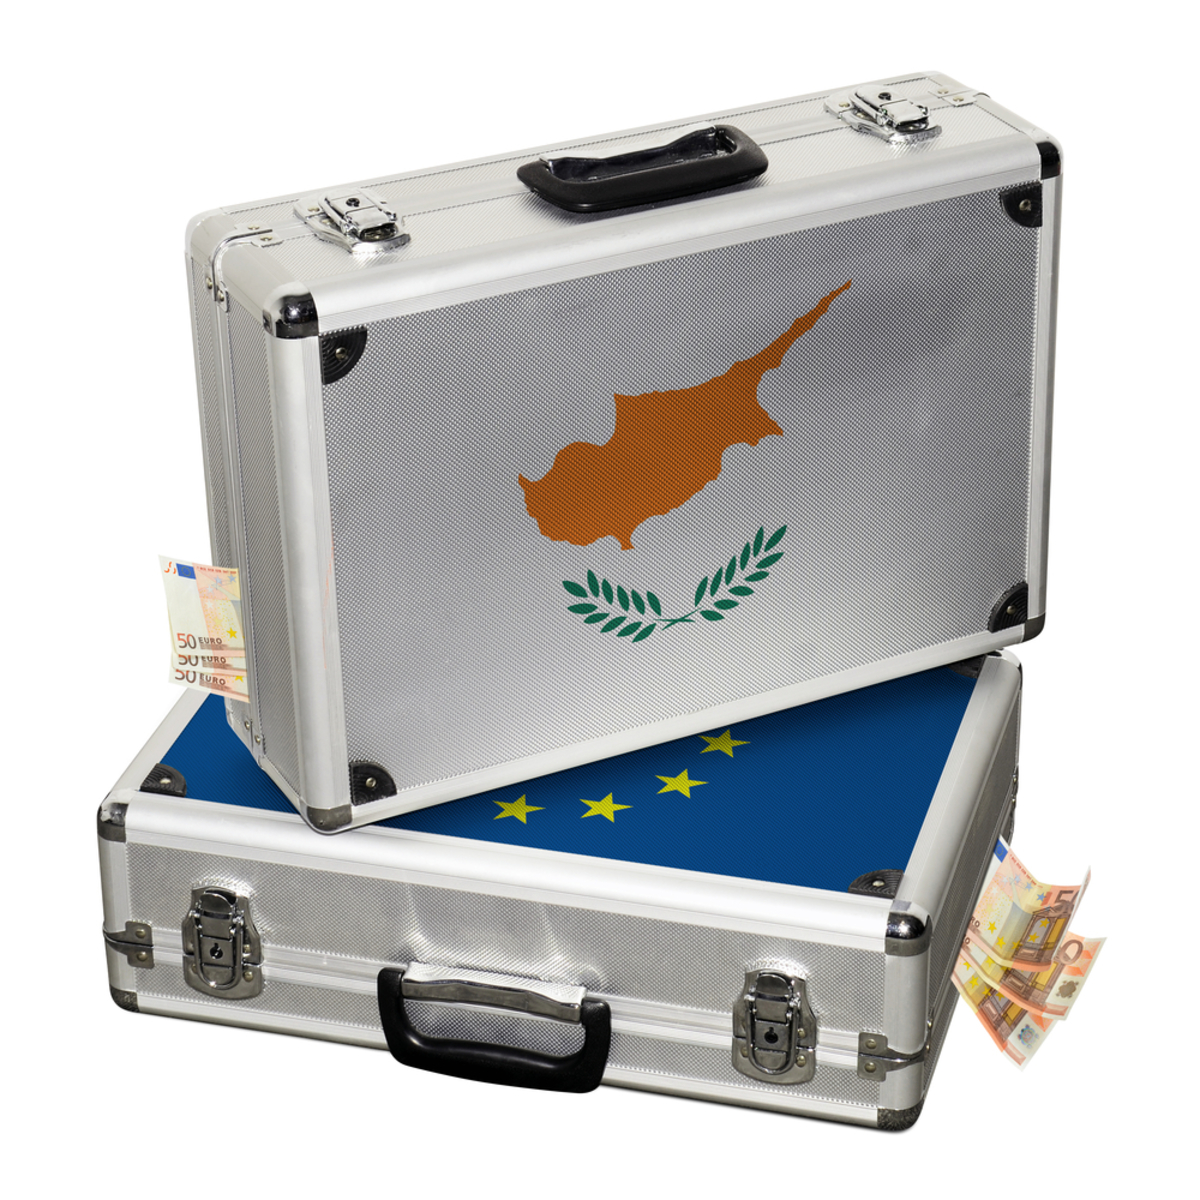 Κύπρος: Η προσφυγή στον Μηχανισμό Στήριξης, εάν γίνει, θα αφορά μόνο την εξυγίανση των τραπεζών